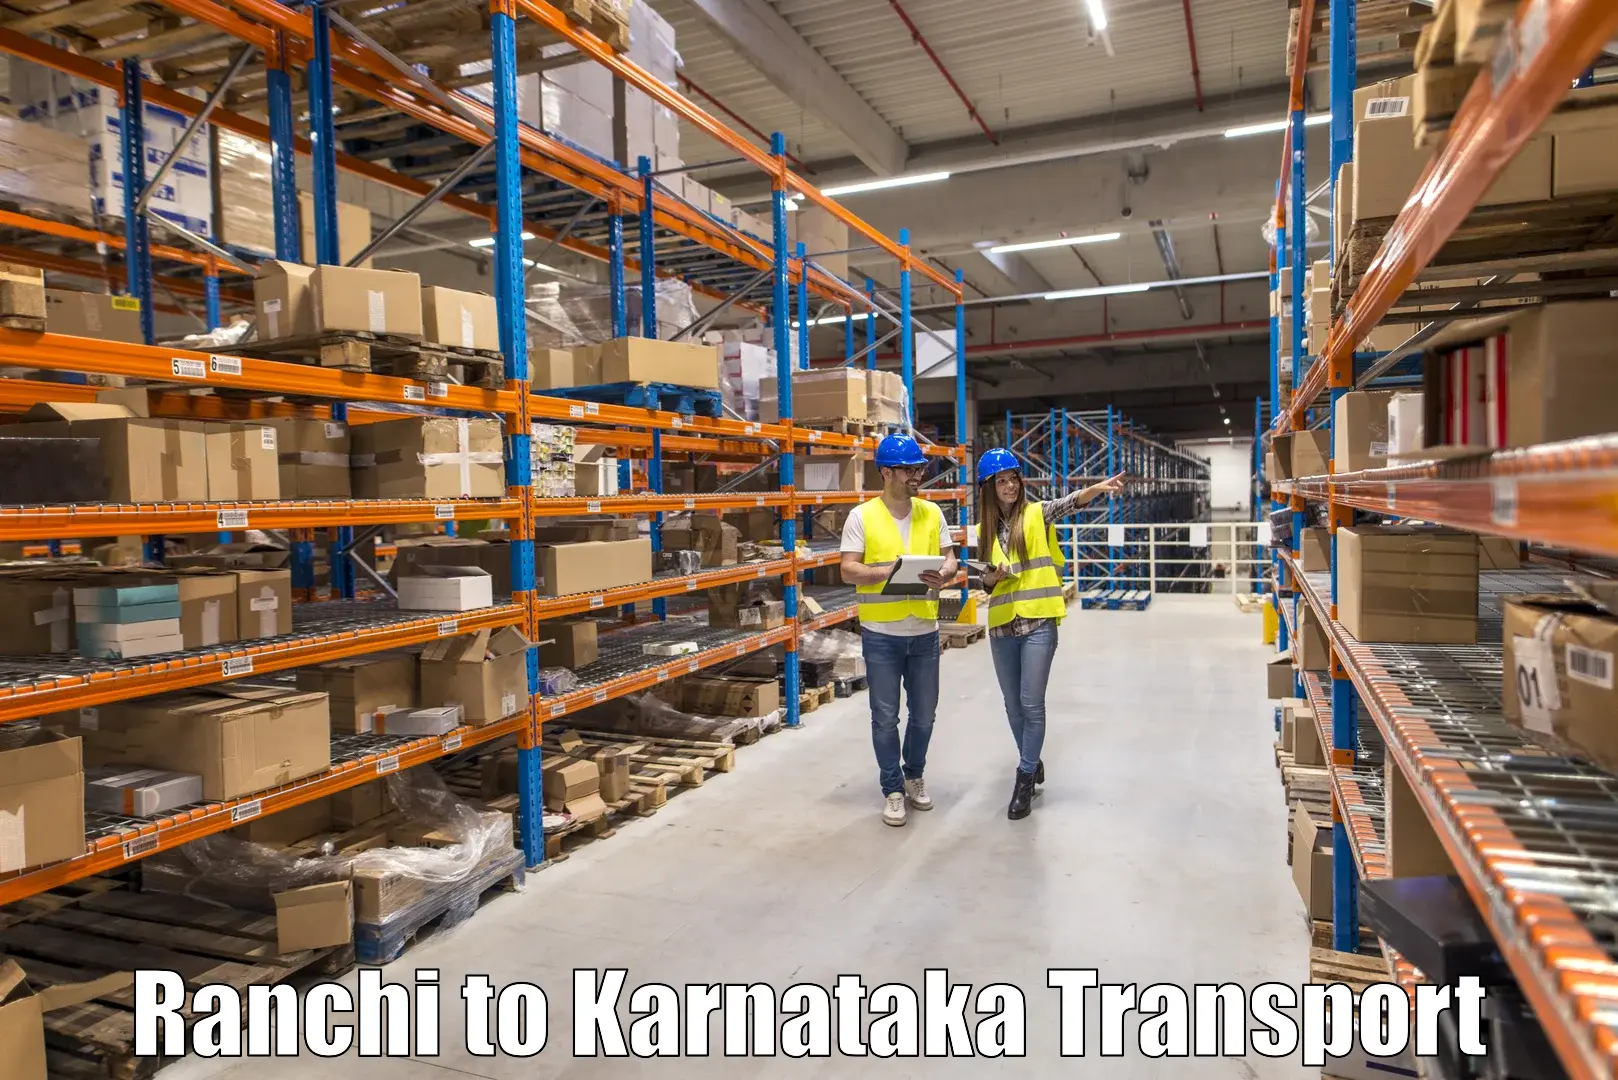 Air cargo transport services Ranchi to Ramanagara